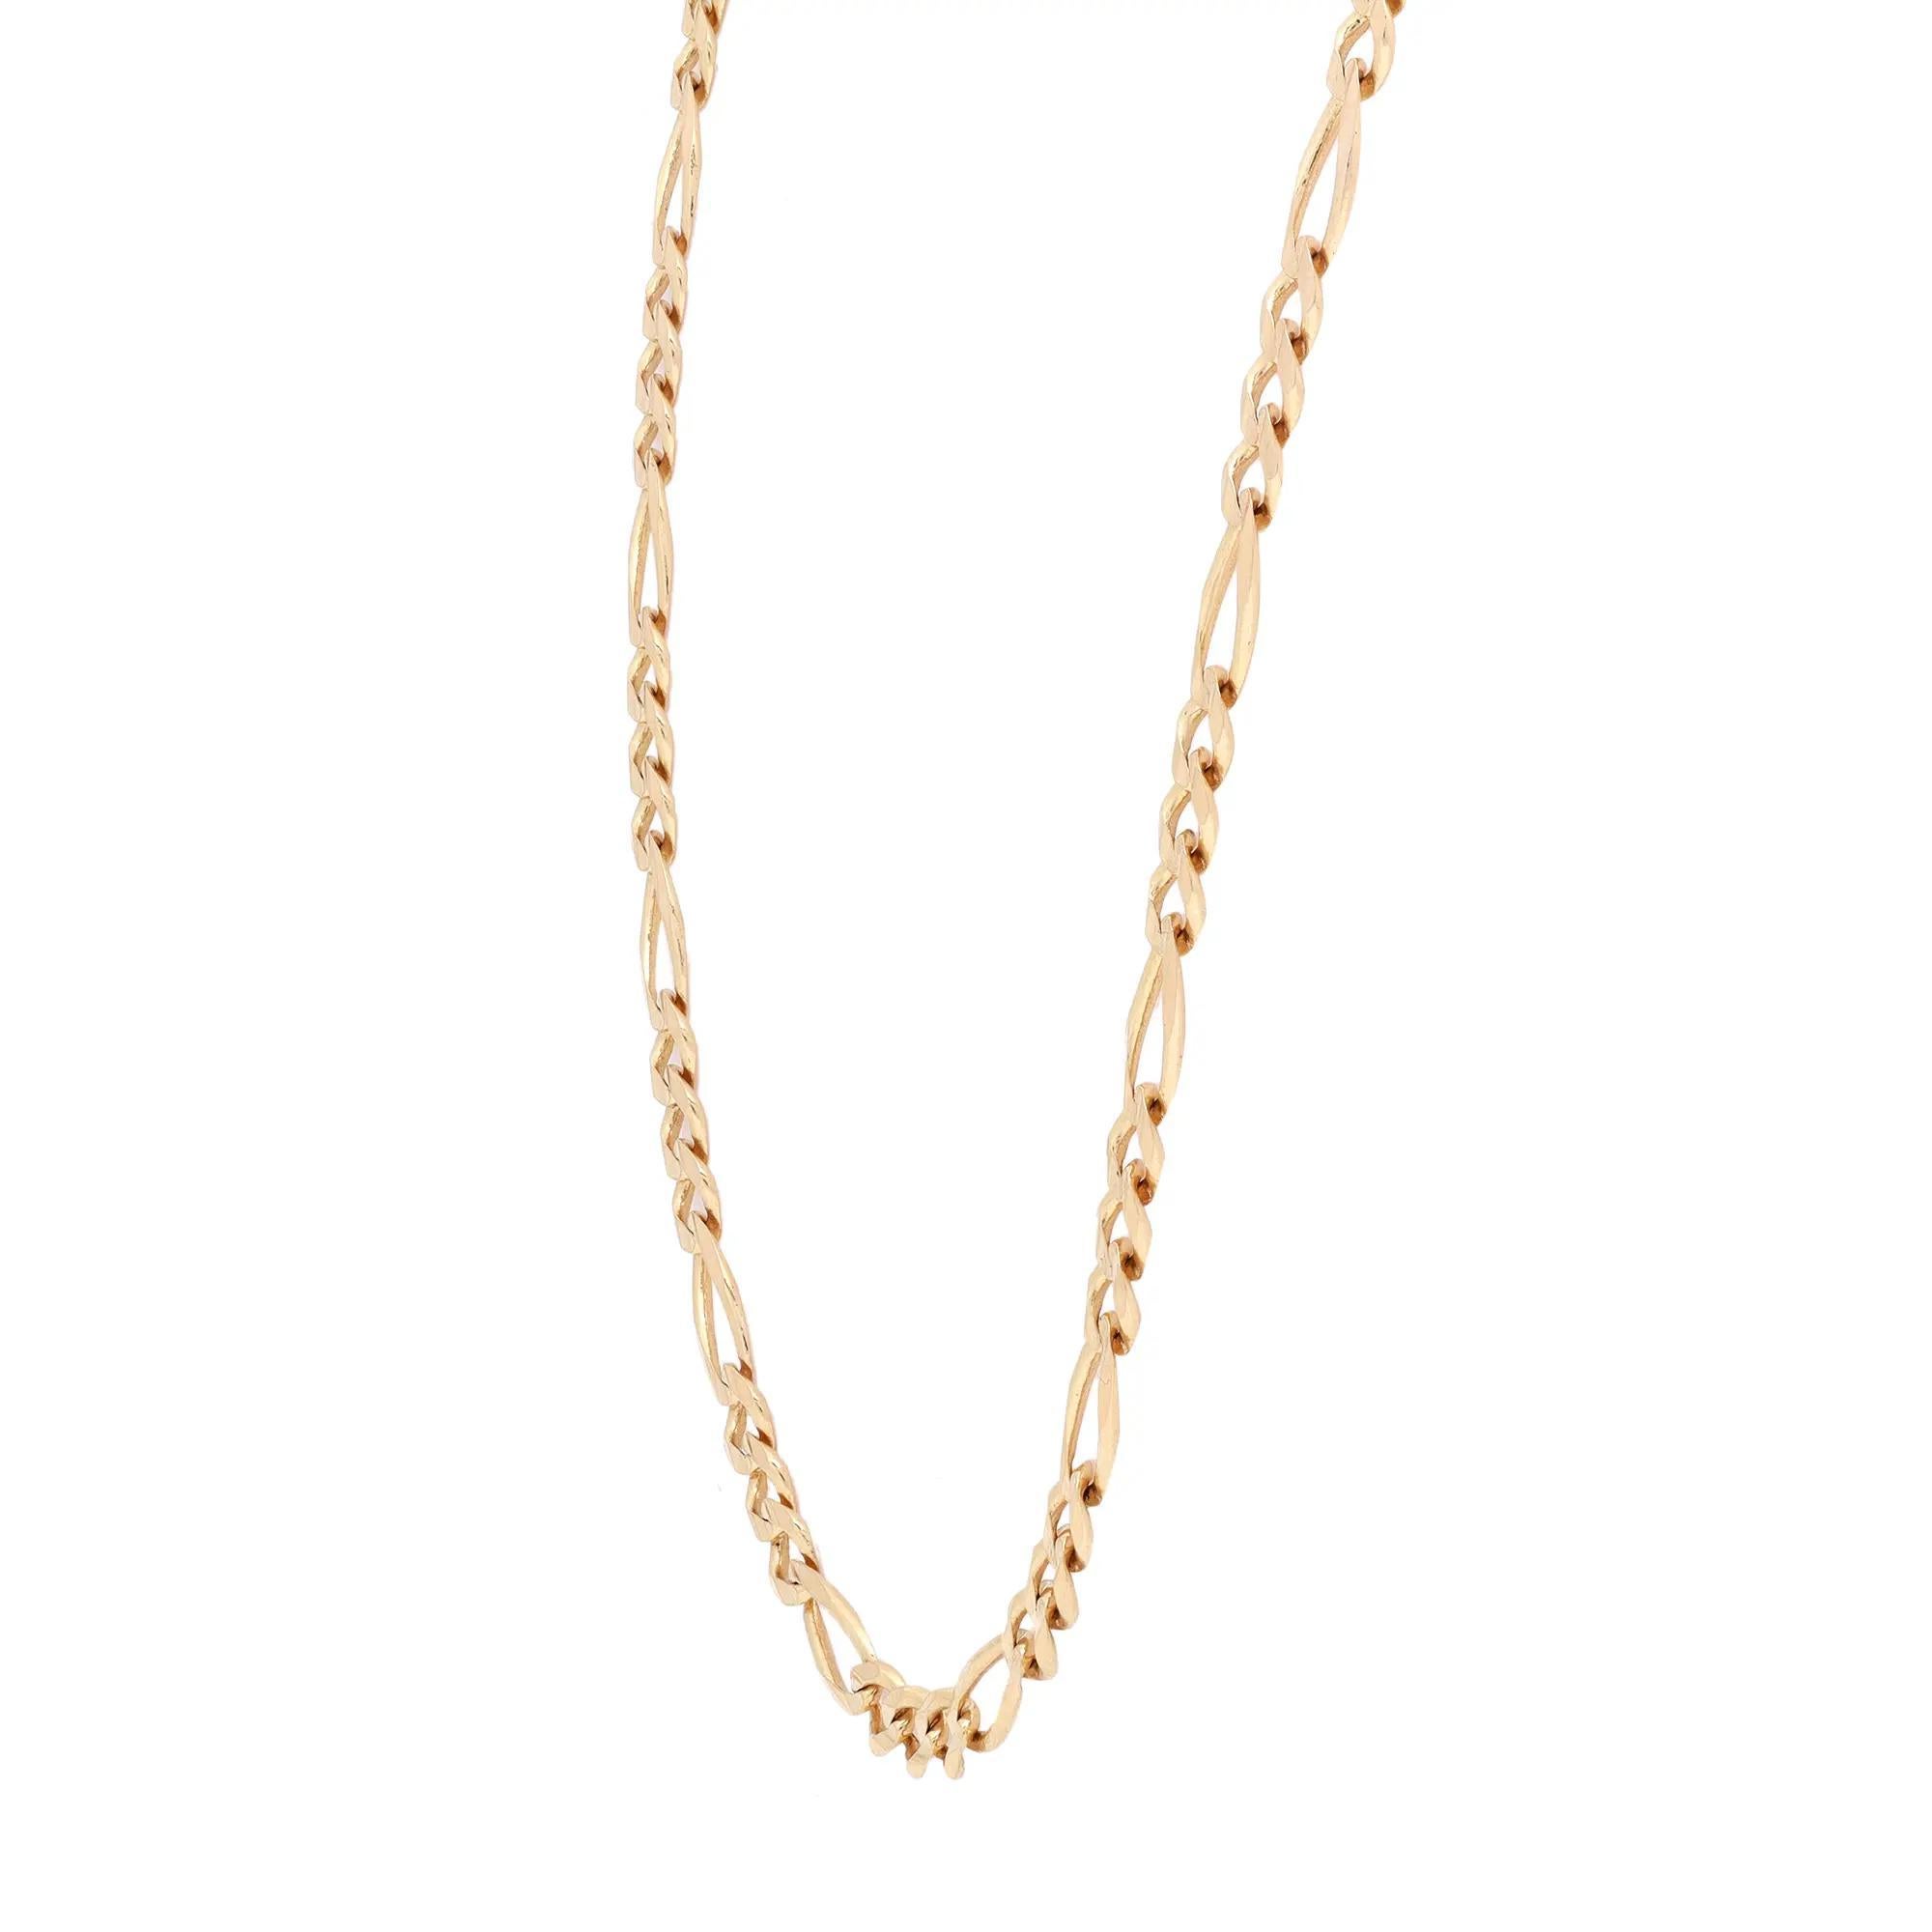 Mettez en valeur votre sens du style classique avec ce collier unisexe Figaro à maillons solides. Fabriqué en or jaune 14K brillant. Longueur : 20 pouces. Largeur : 4,05 mm Poids : 11,32 grammes. Fermeture : Fermeture à homard. Que vous le